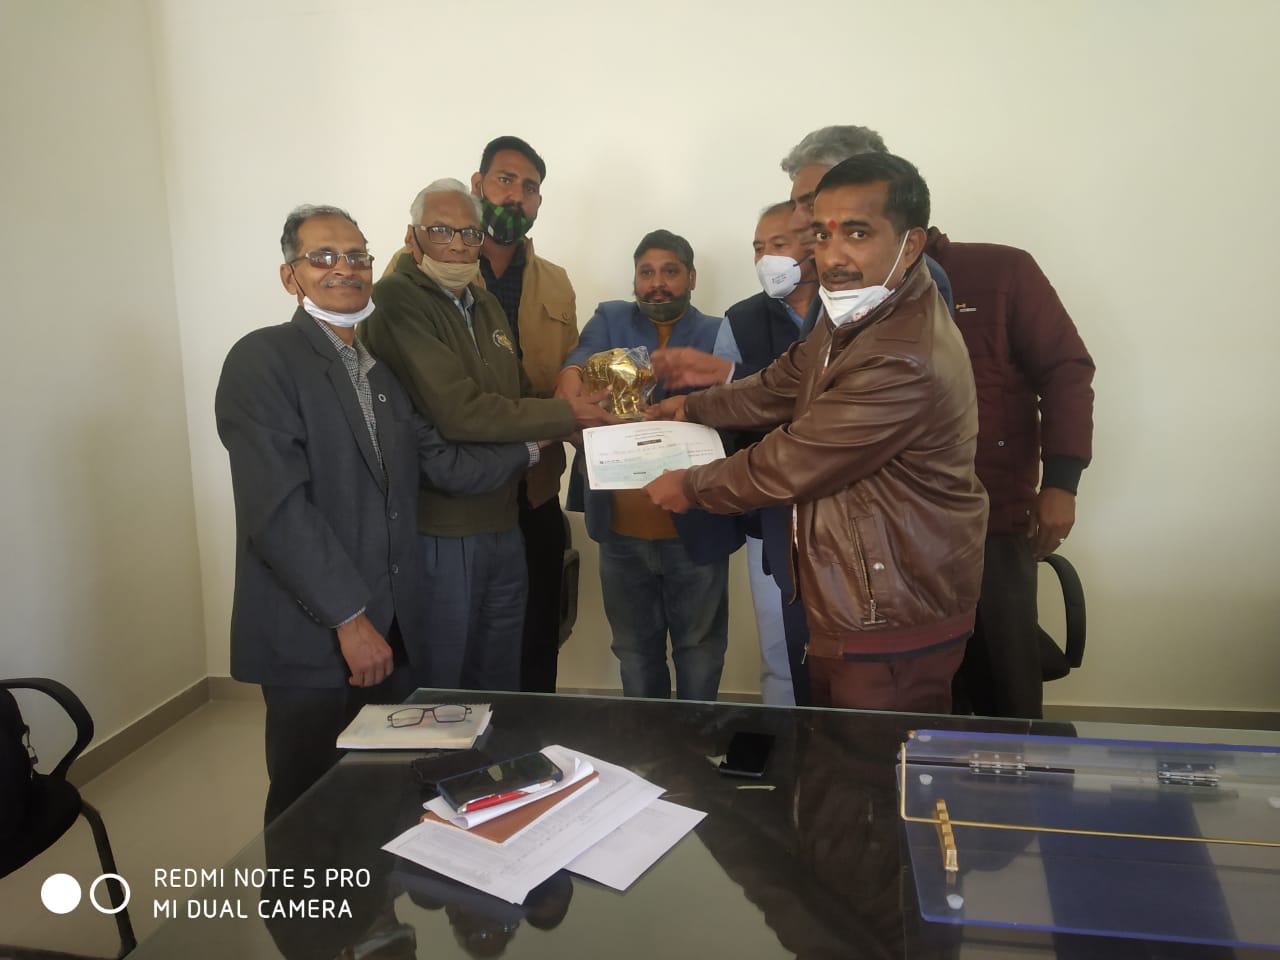 सुरभि गउग्राम गौशाला को 5 हजार रुपए का नकद पुरस्कार